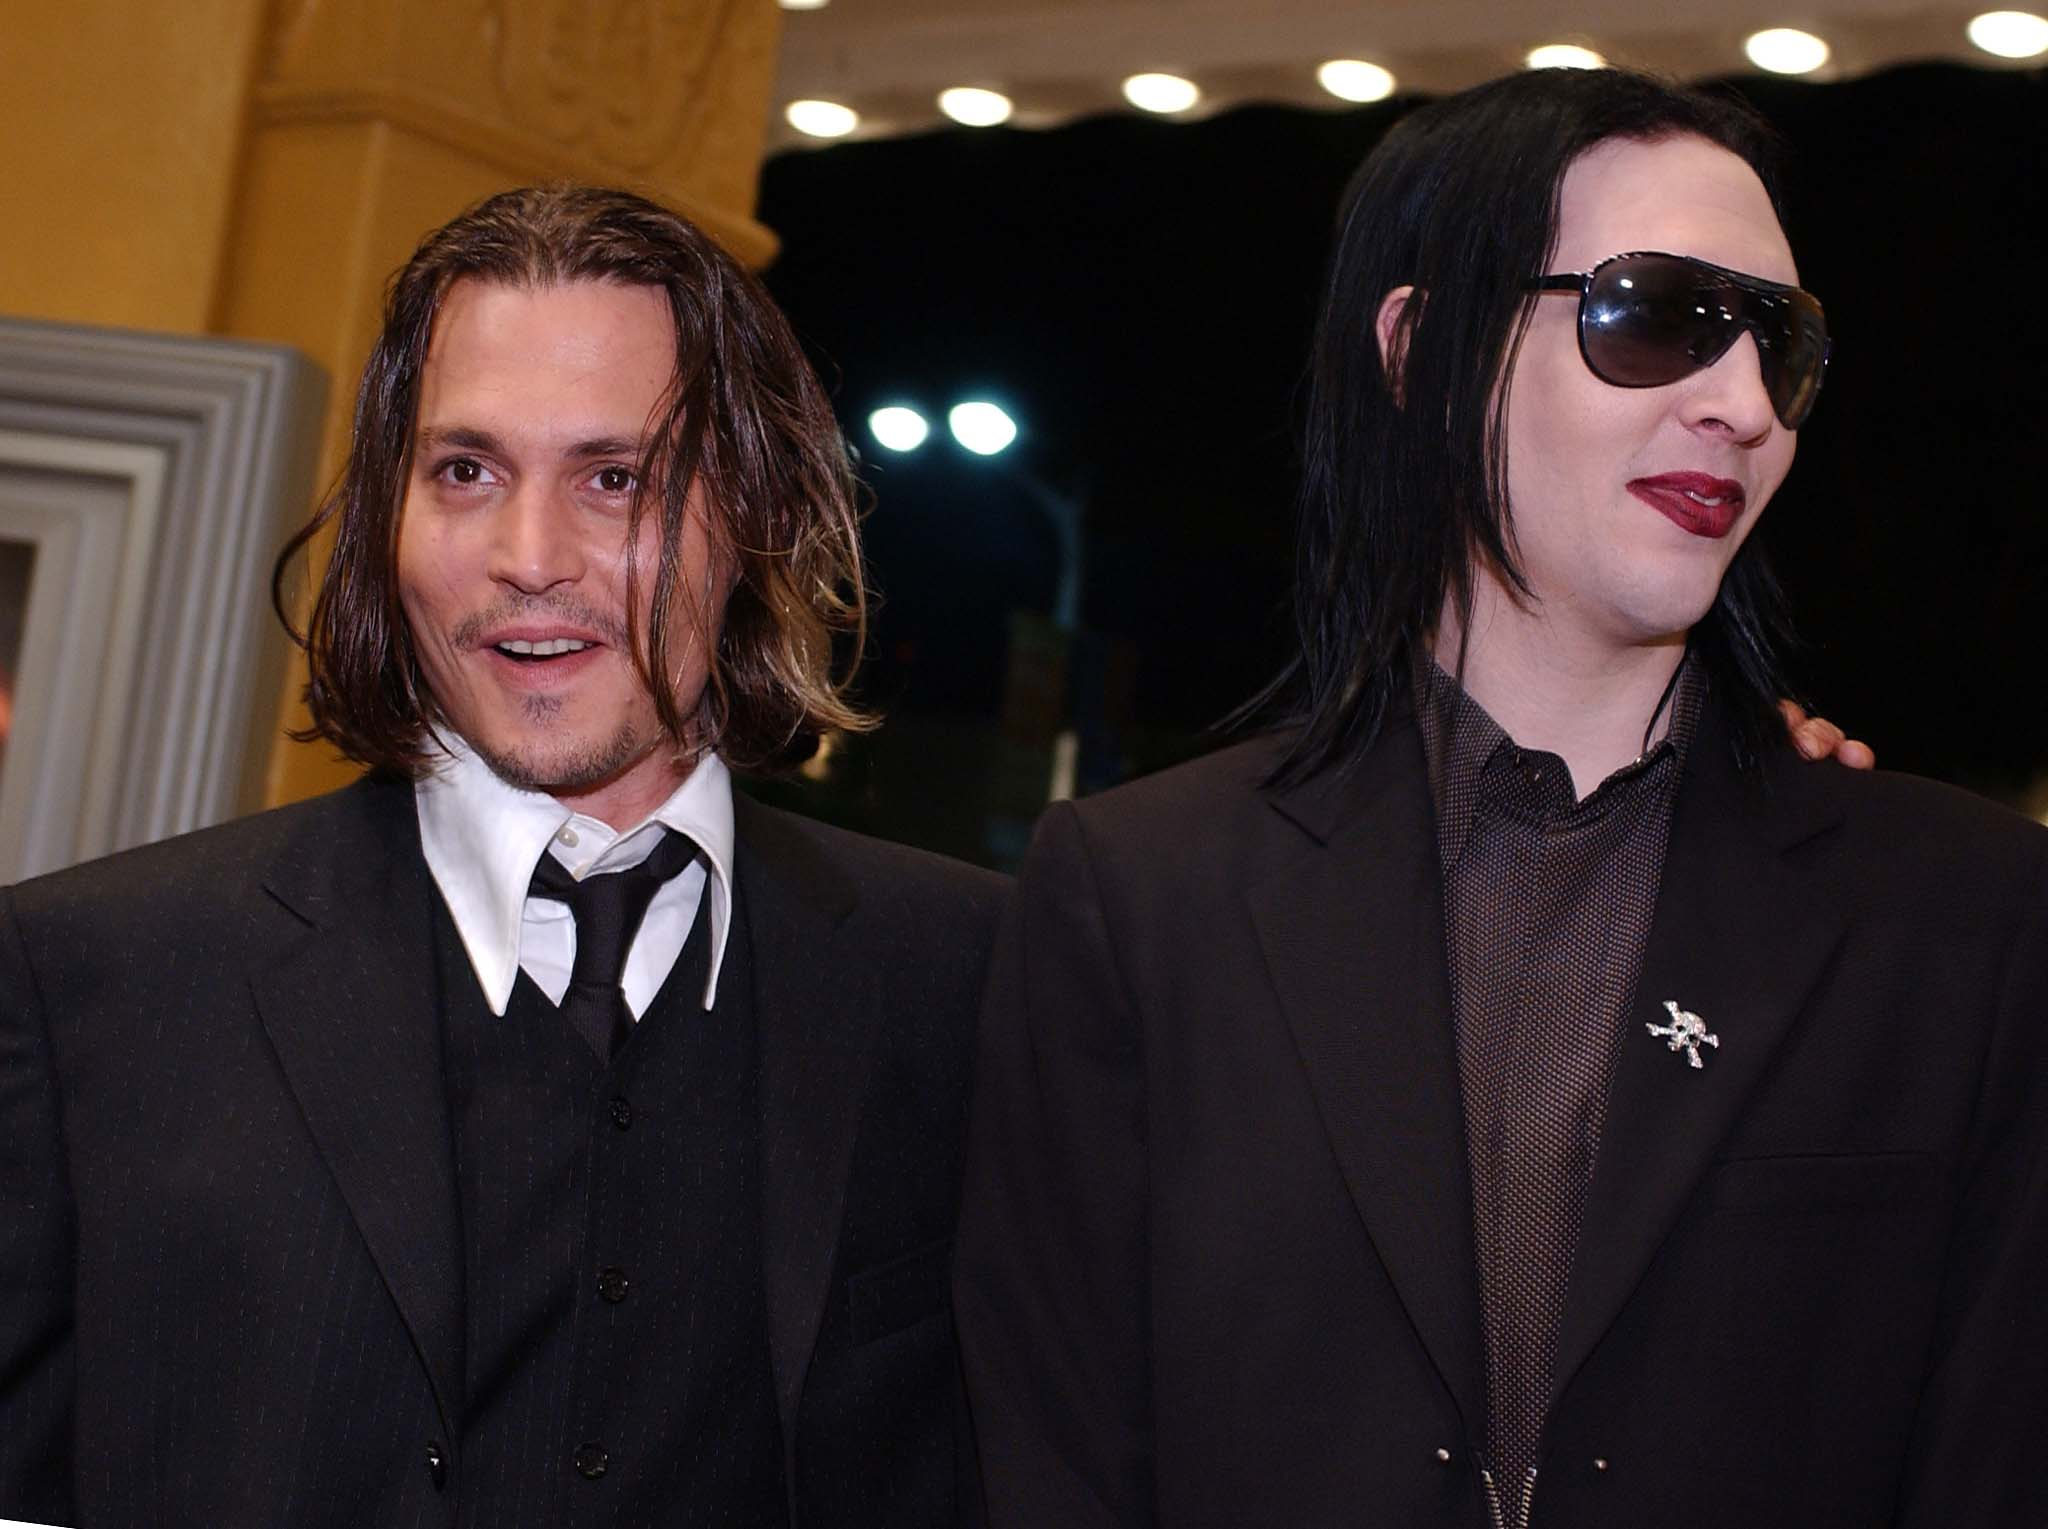 Johnny Depp e Marilyn Manson têm amizade especial e até tatuagens iguais